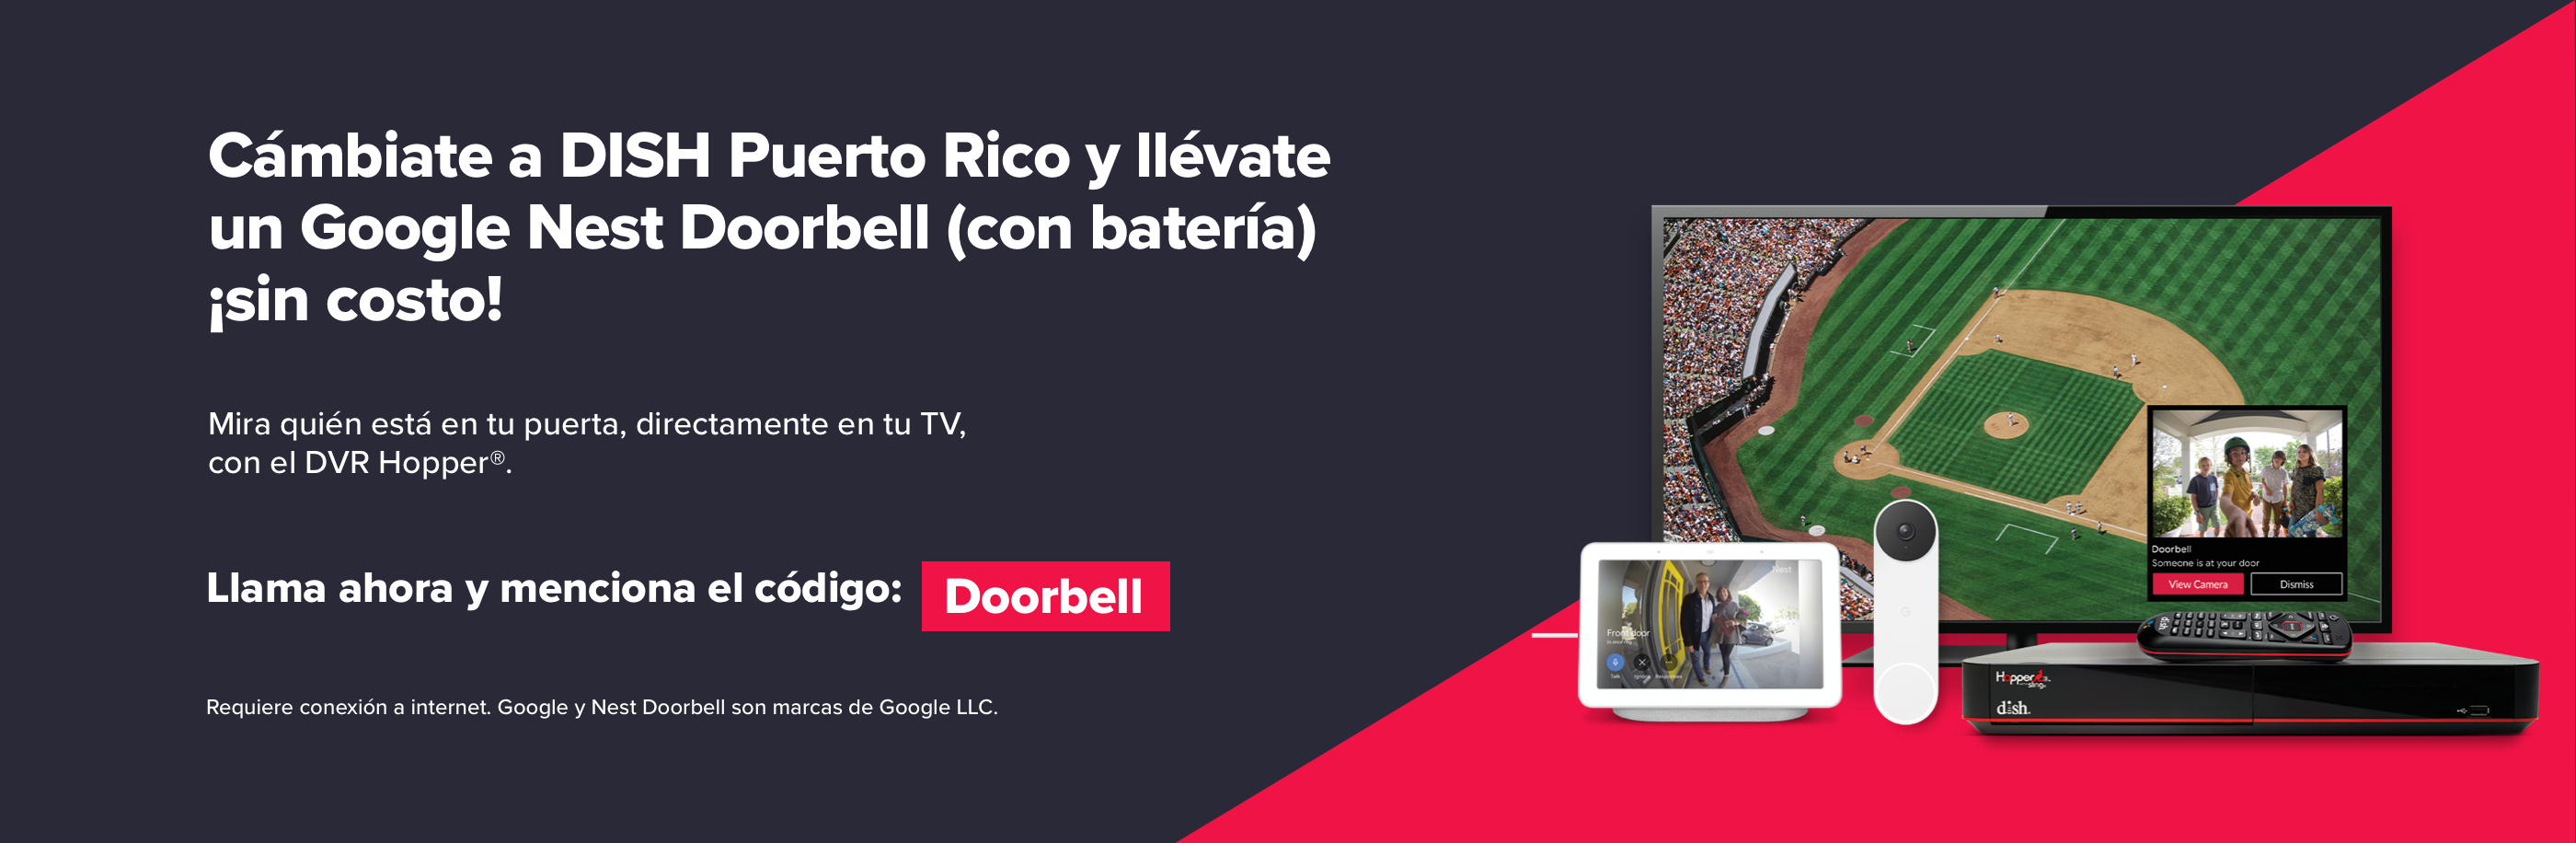 Cambiate a DISH Puerto Rico y llevate un Google Nest Doorbell (con bateria) sin costo!